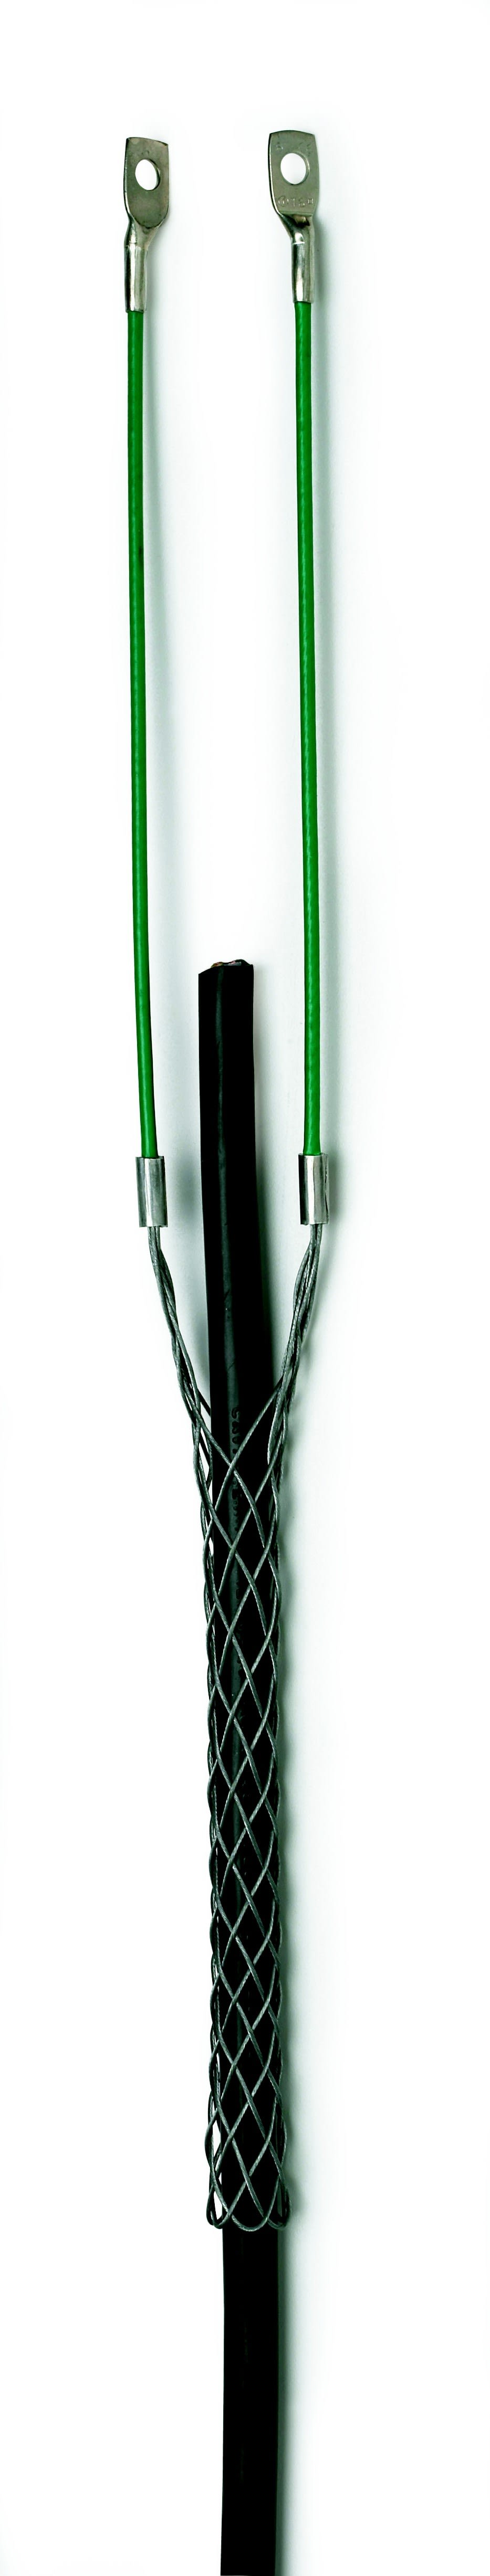 Cable Equipements - Chaussette de tirage acier galvanisé - Pour câble Ø 22 à 28 mm